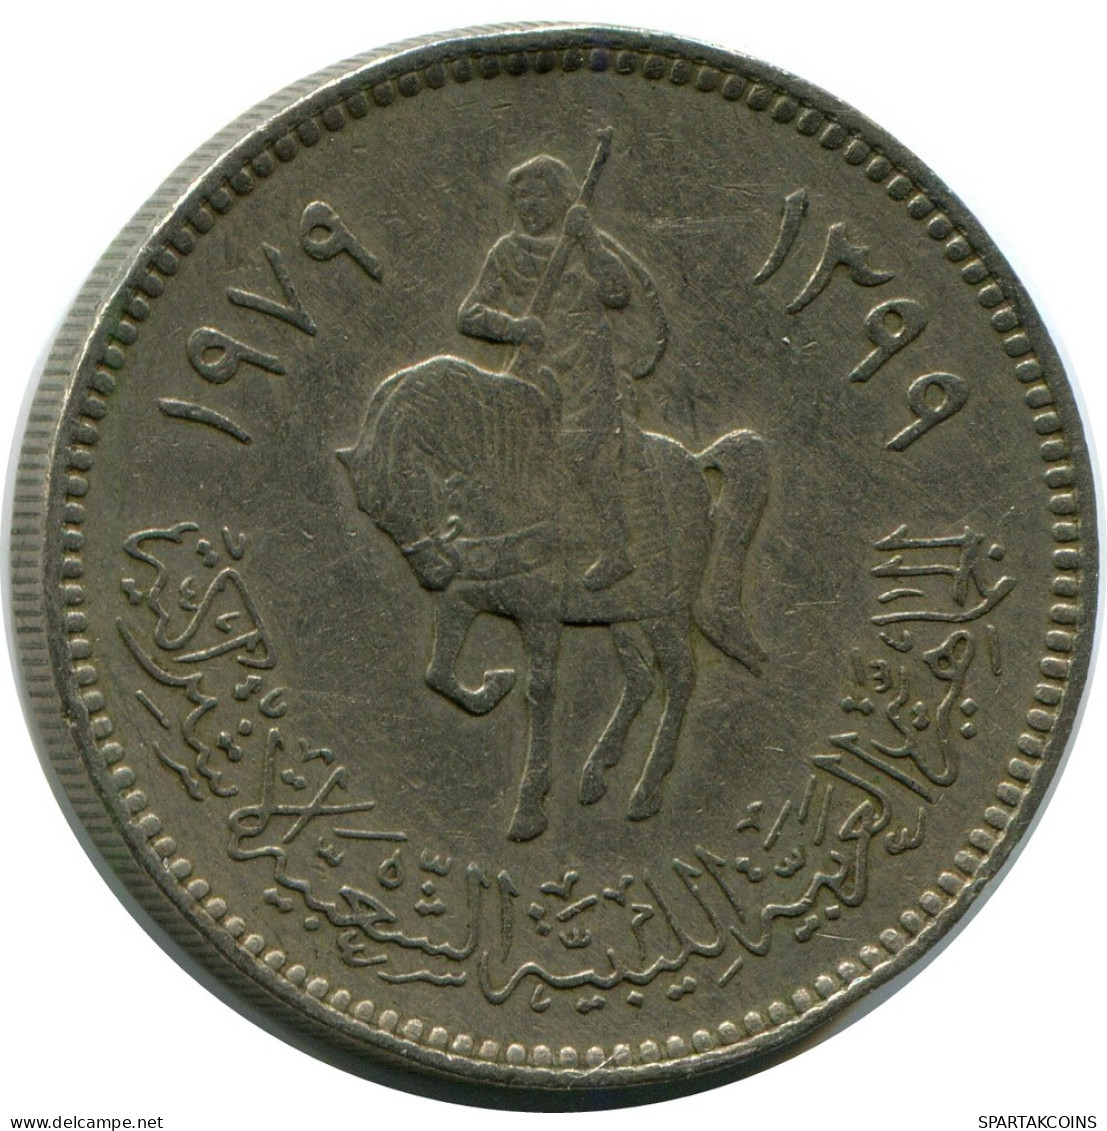 100 DIRHAMS 1979 LIBYA Coin #AR020.U - Libyen